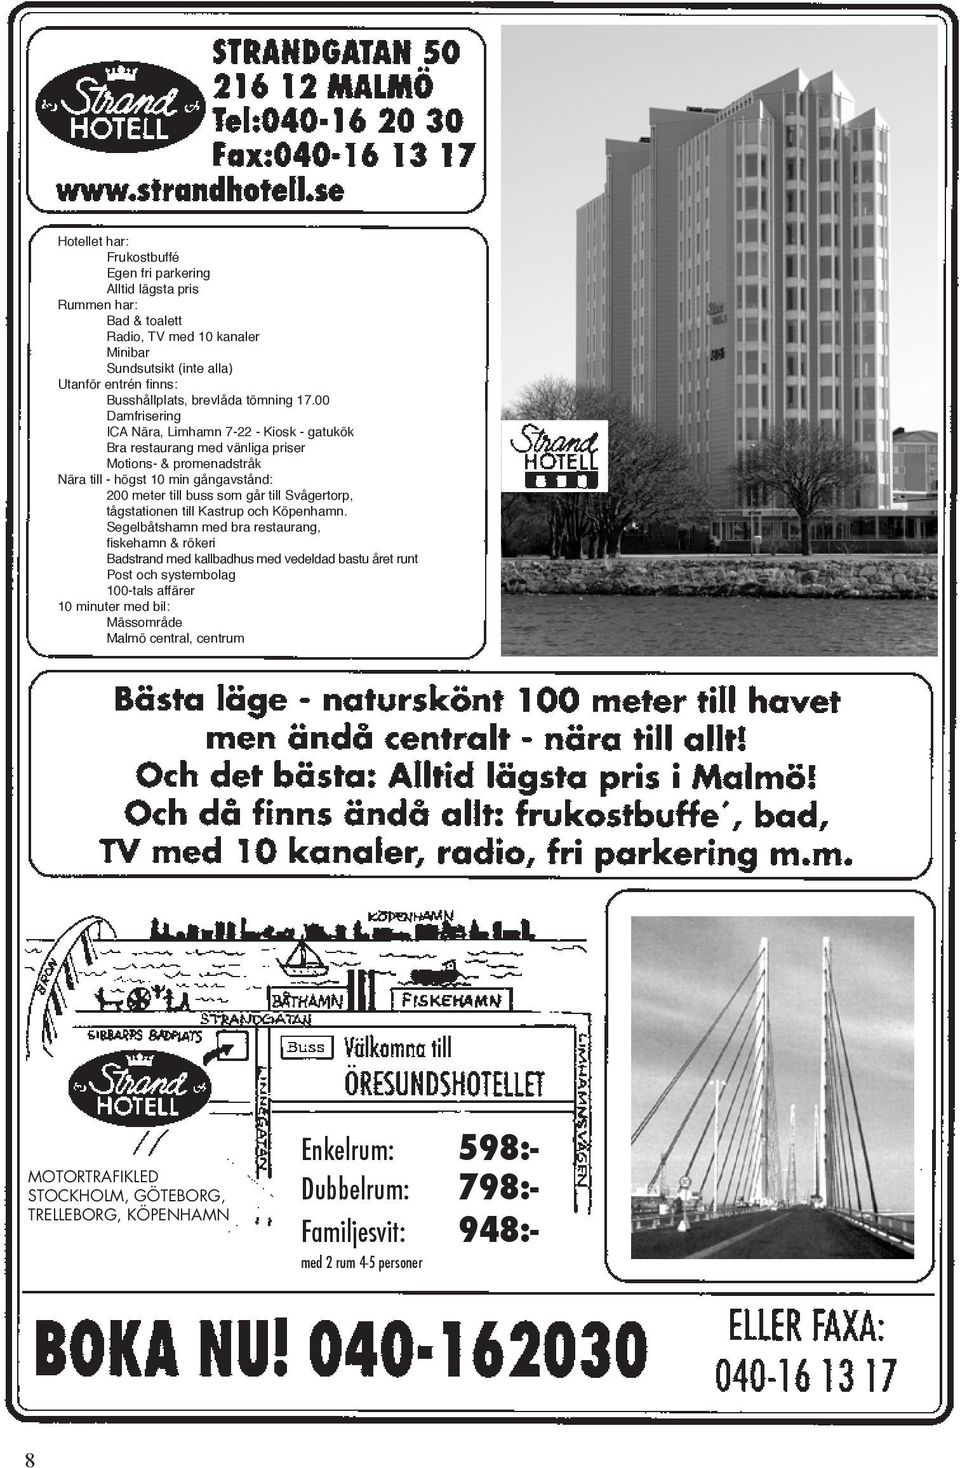 00 Damfrisering ICA Nära, Limhamn 7-22 - Kiosk - gatukök Bra restaurang med vänliga priser Motions- & promenadstråk Nära till - högst 10 min gångavstånd: 200 meter till buss som går till